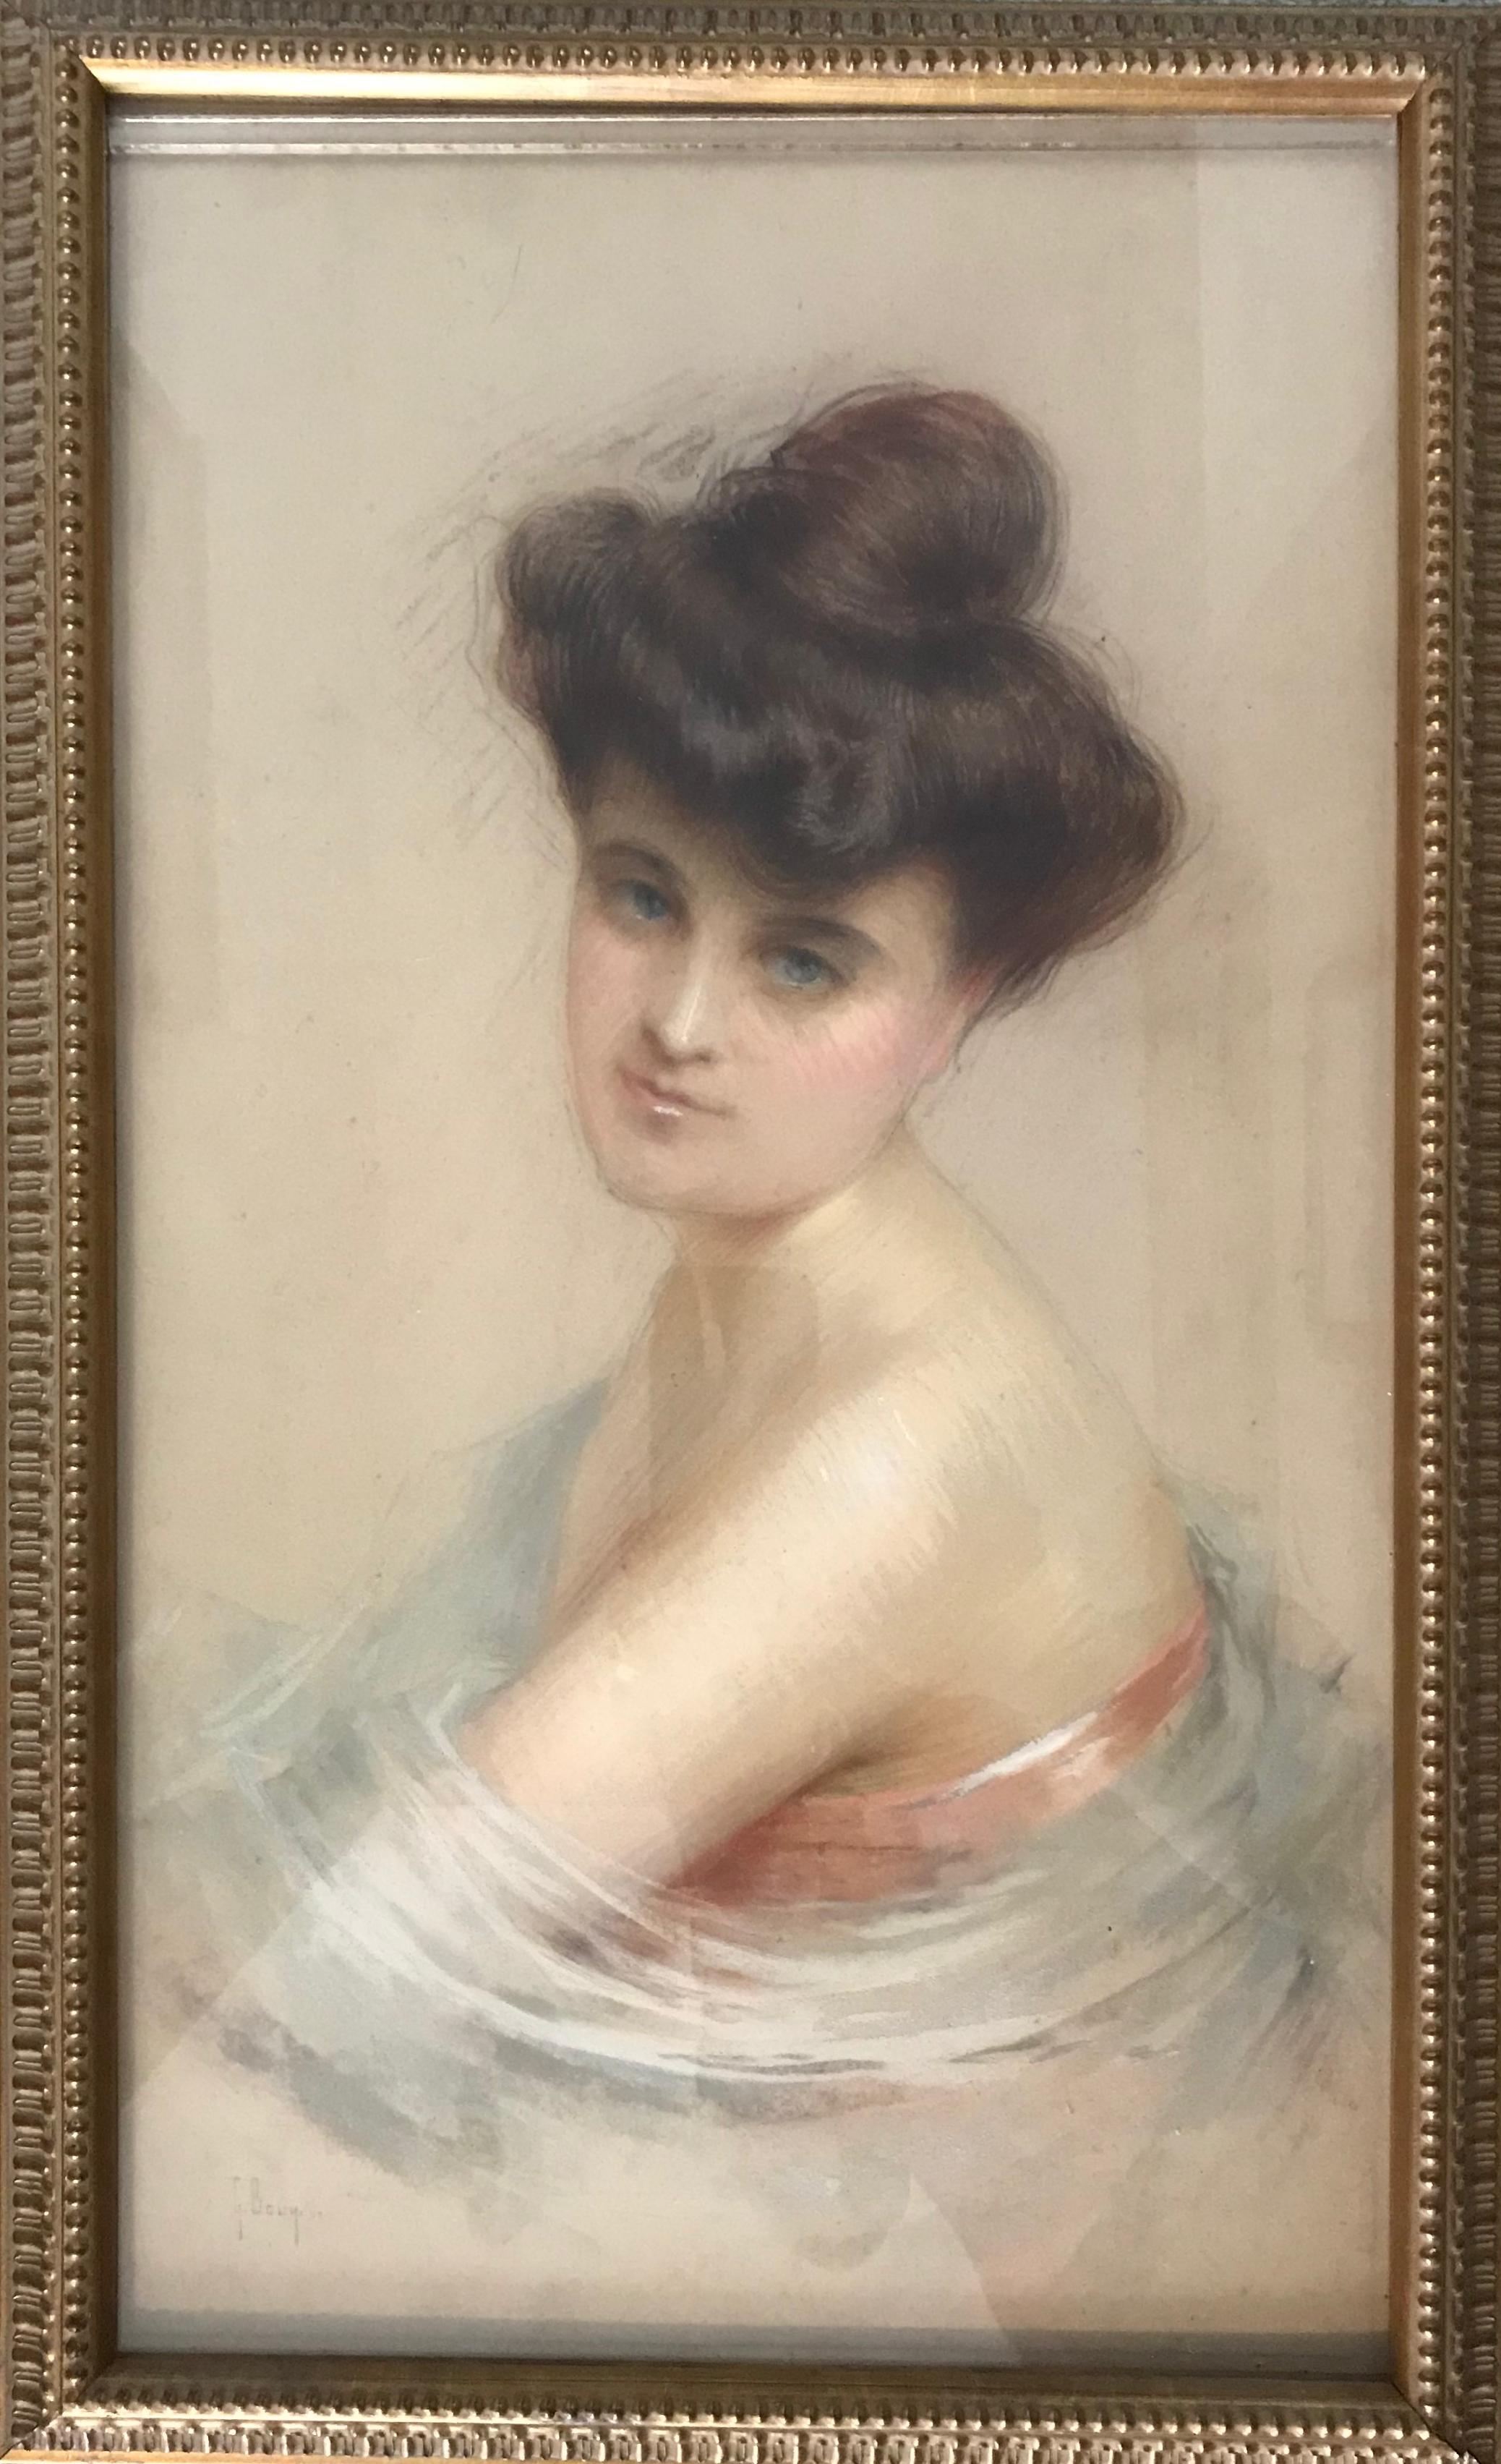 "Demoiselle" - Framed Early 20th Century Pastel Woman Portrait - Art by Gaston Bouy